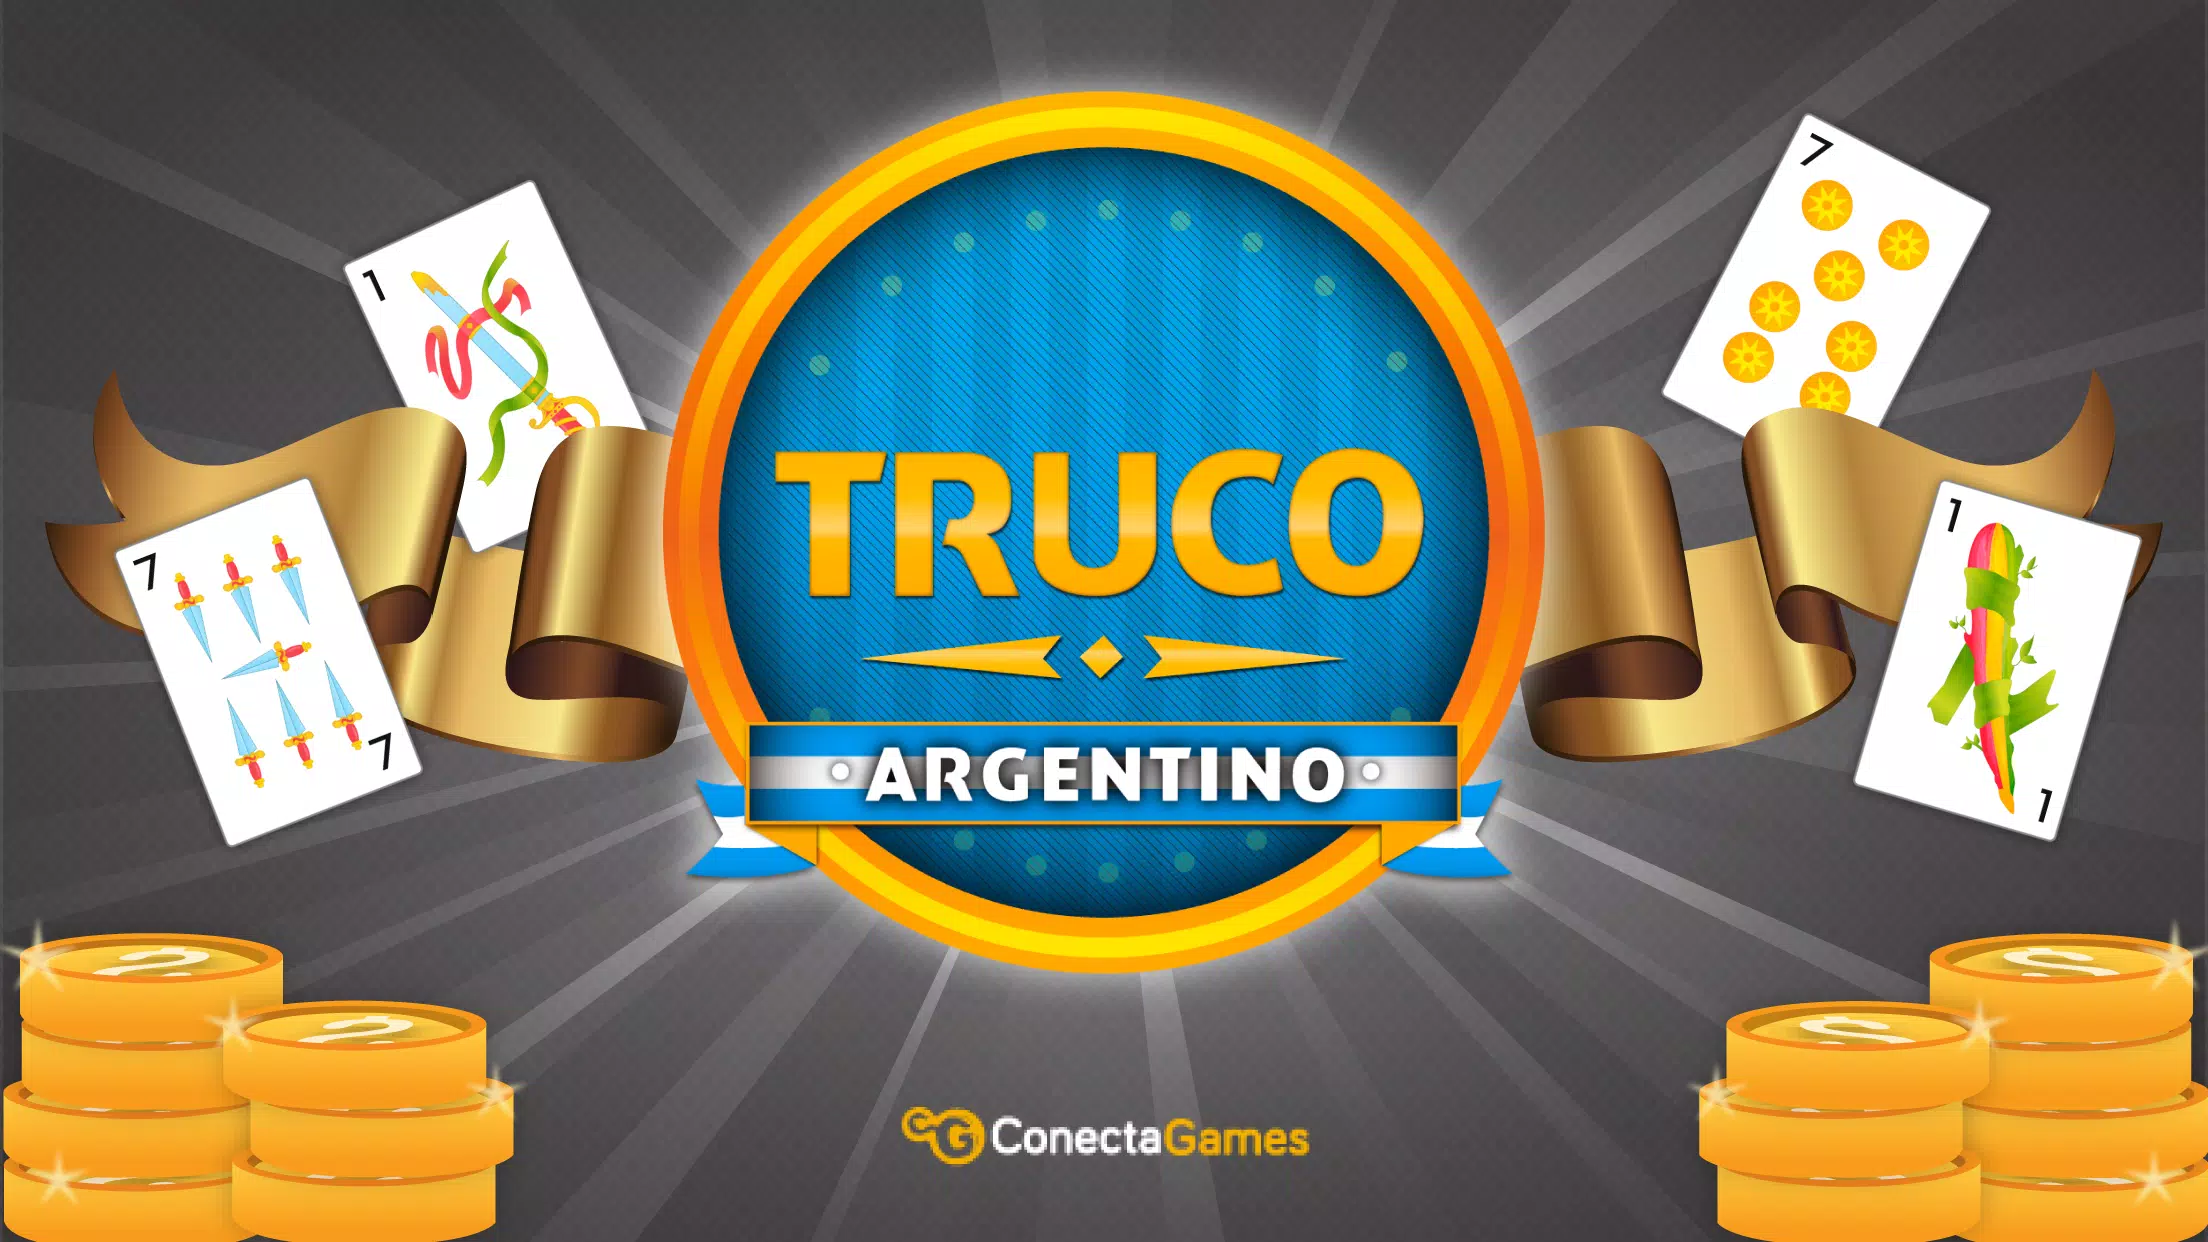 Truco Gaudério Online grátis - Jogos de Cartas